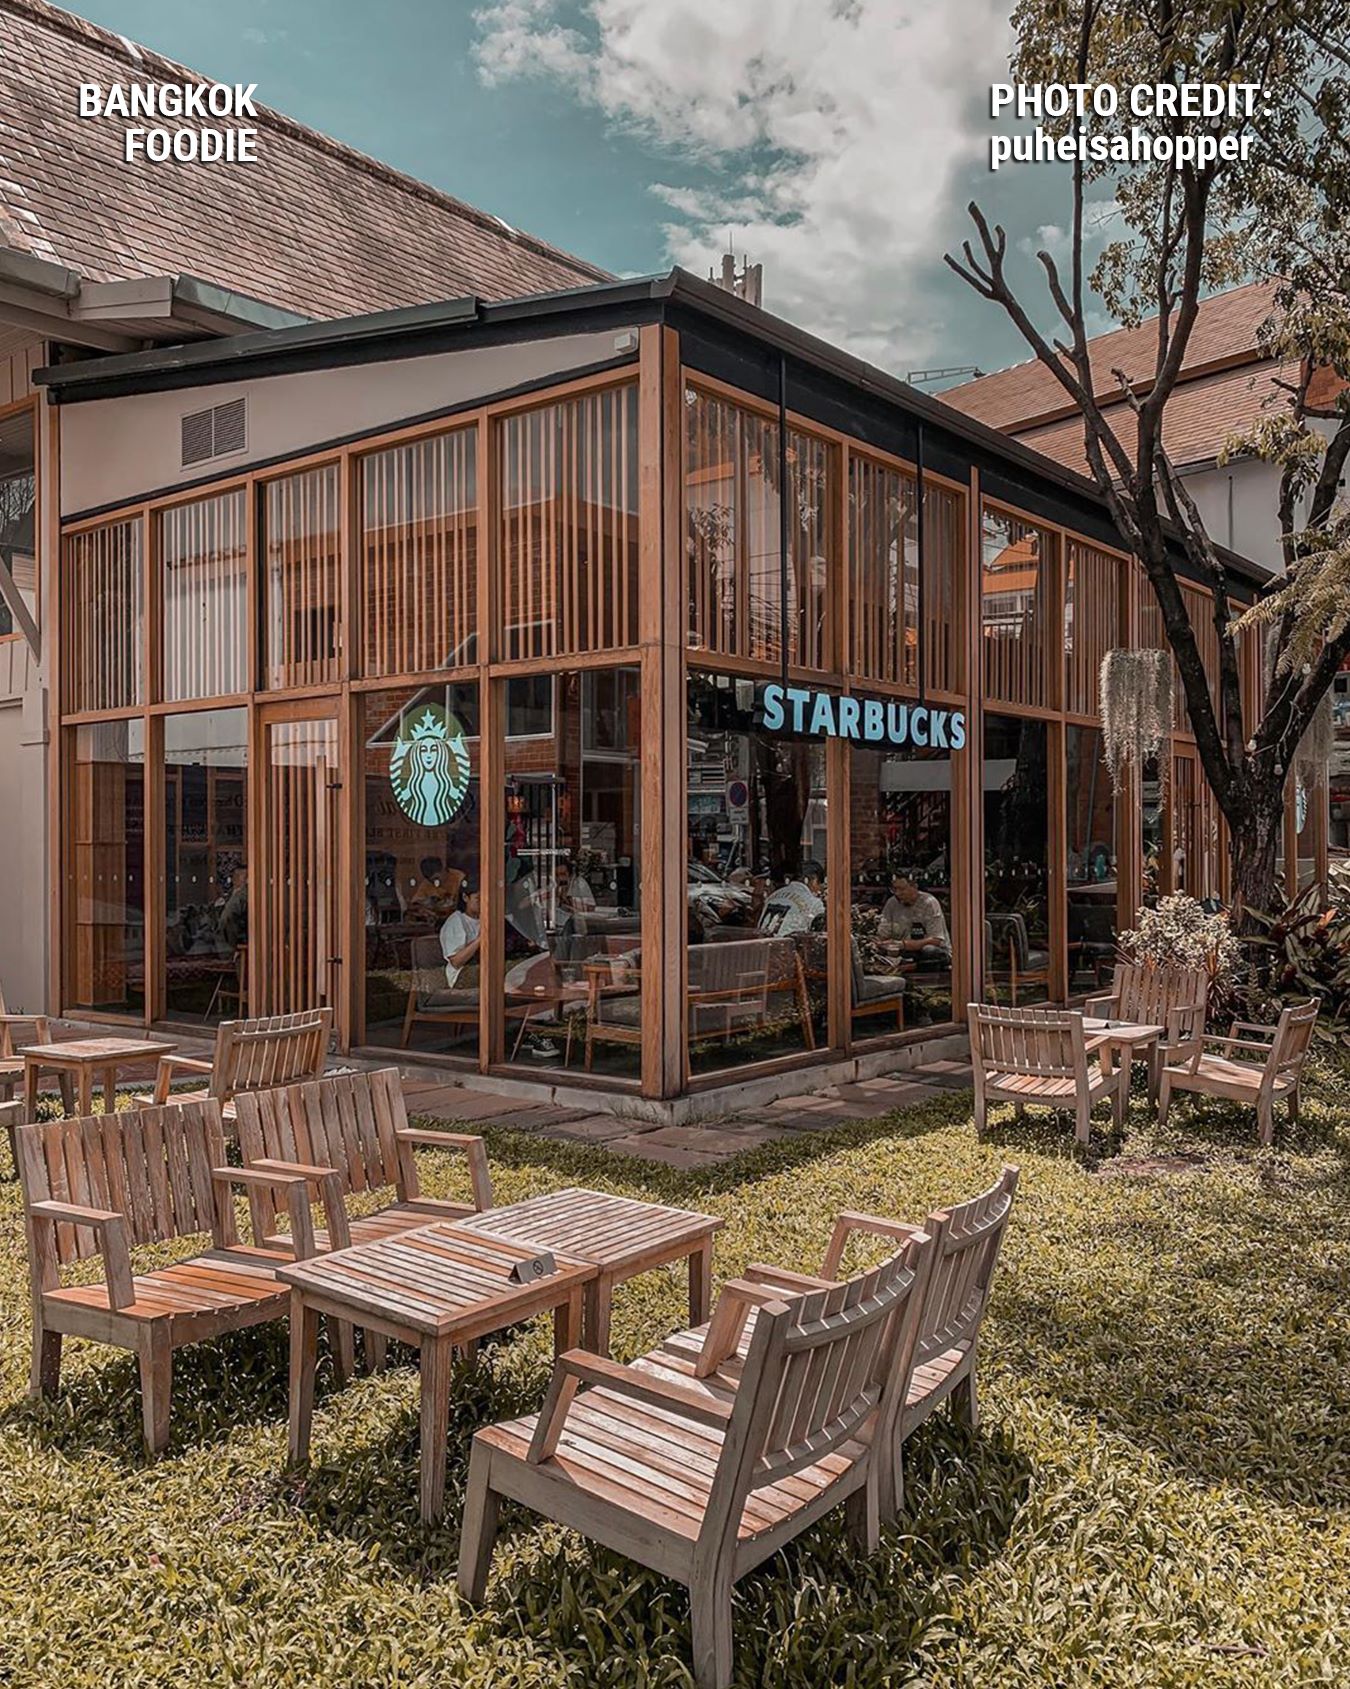 Starbucks ở Nimmanhemin, Chiang Mai hướng đến thân thiện với môi trường khi sử dụng vật liệu xây dựng chính là gỗ.